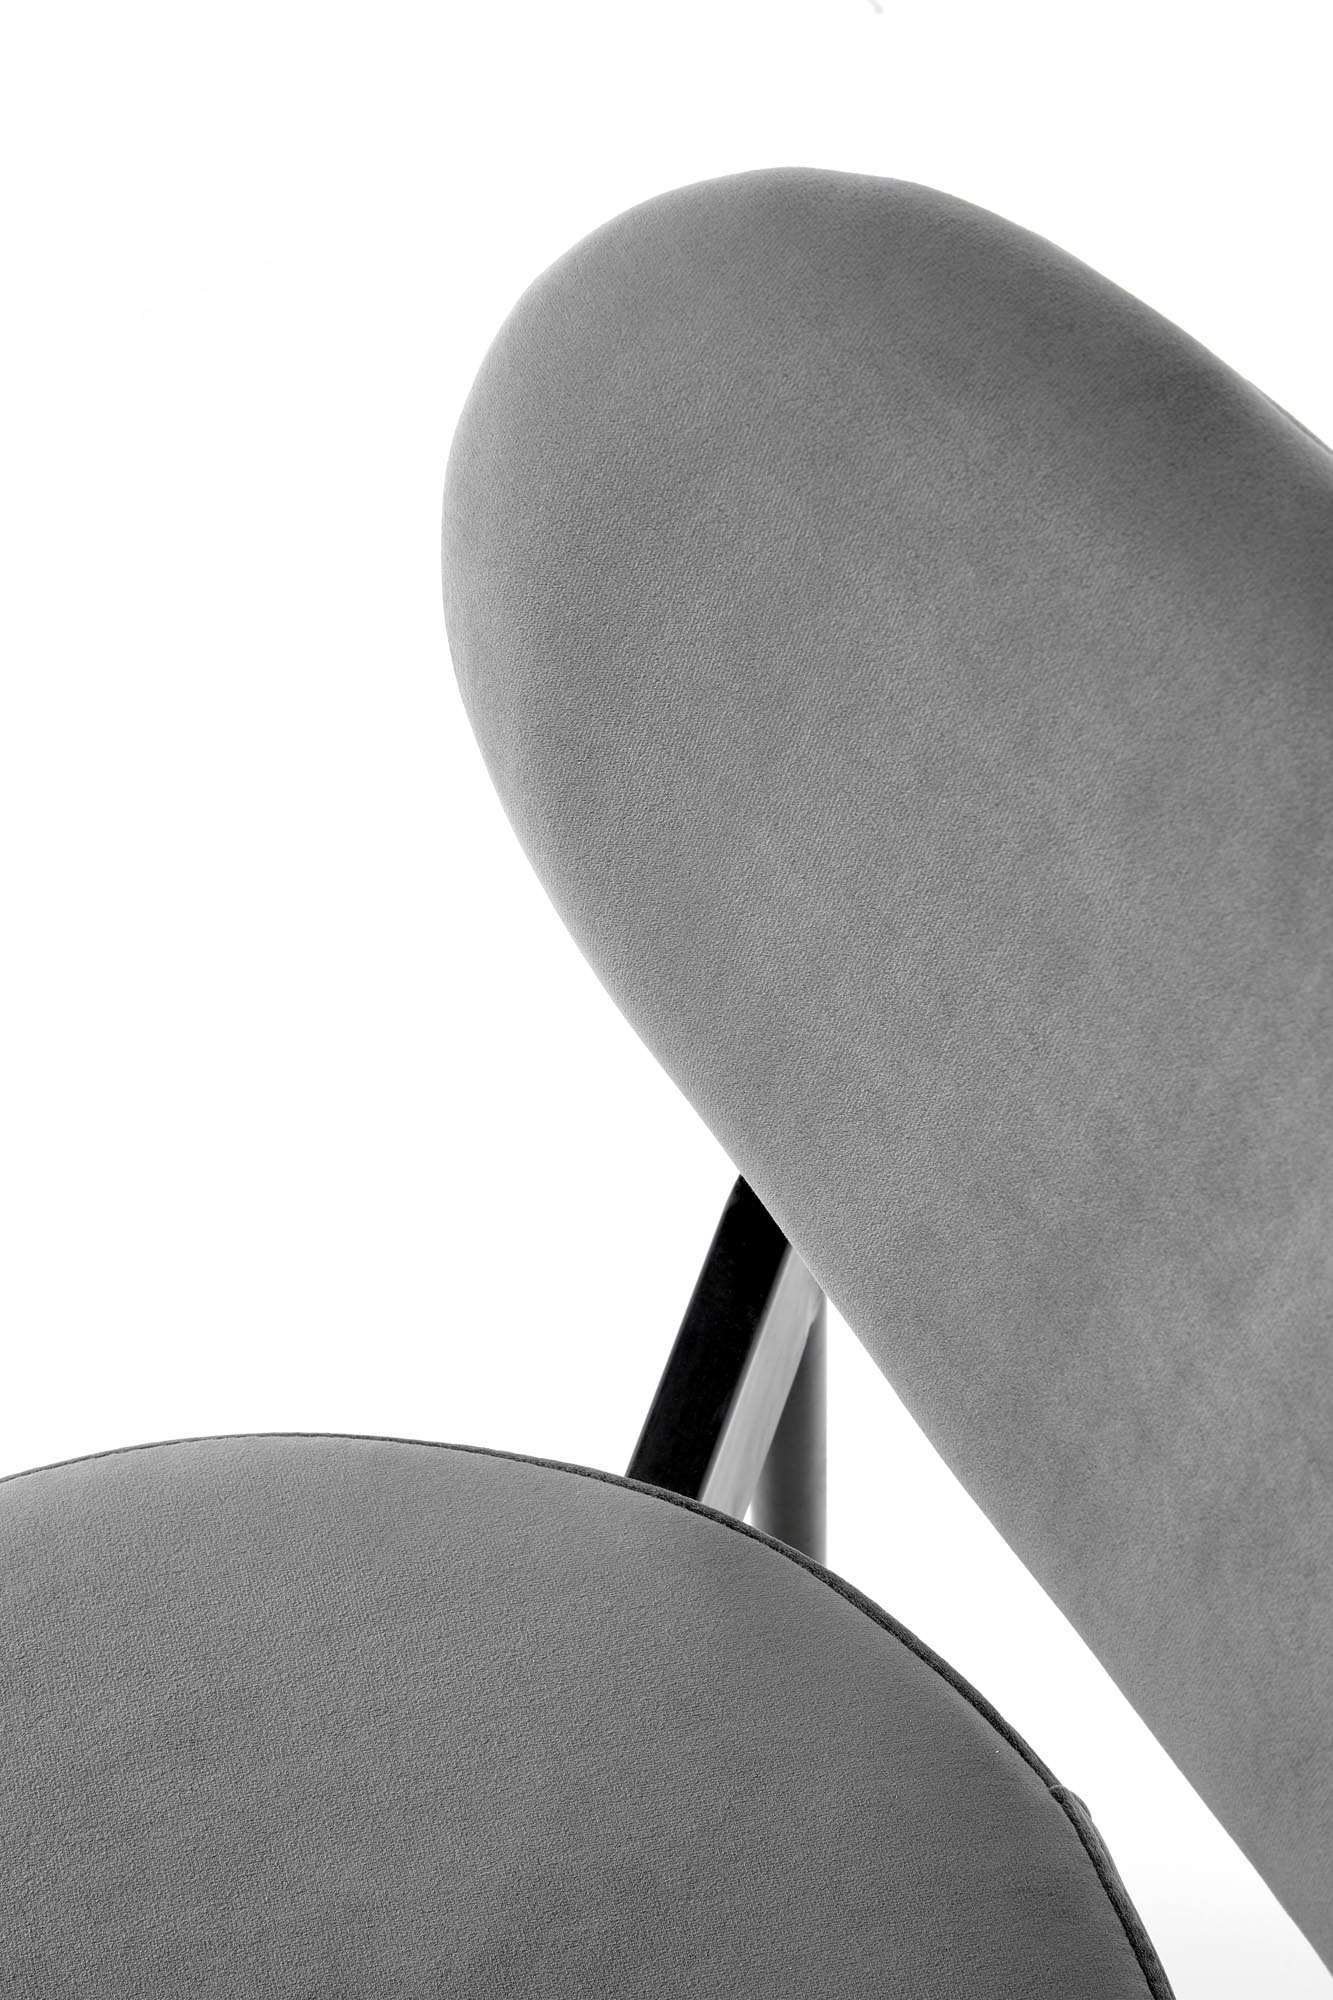 Krzesło tapicerowane K509 - popielaty krzesło tapicerowane k509 - popielaty